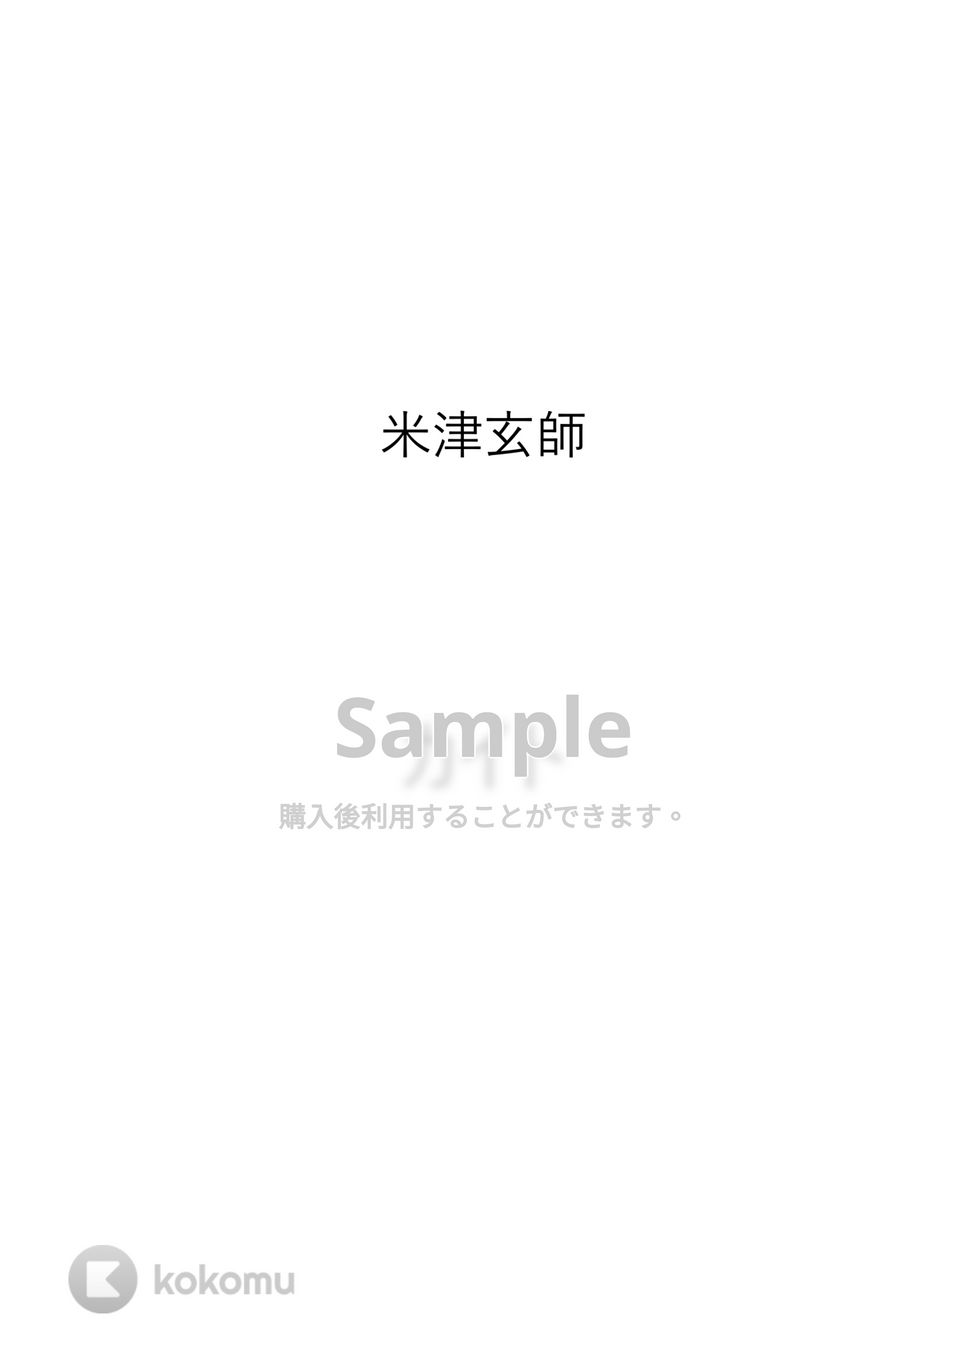 嵐 / 米津玄師 - カイト by Moeko.小さな小さな音楽会